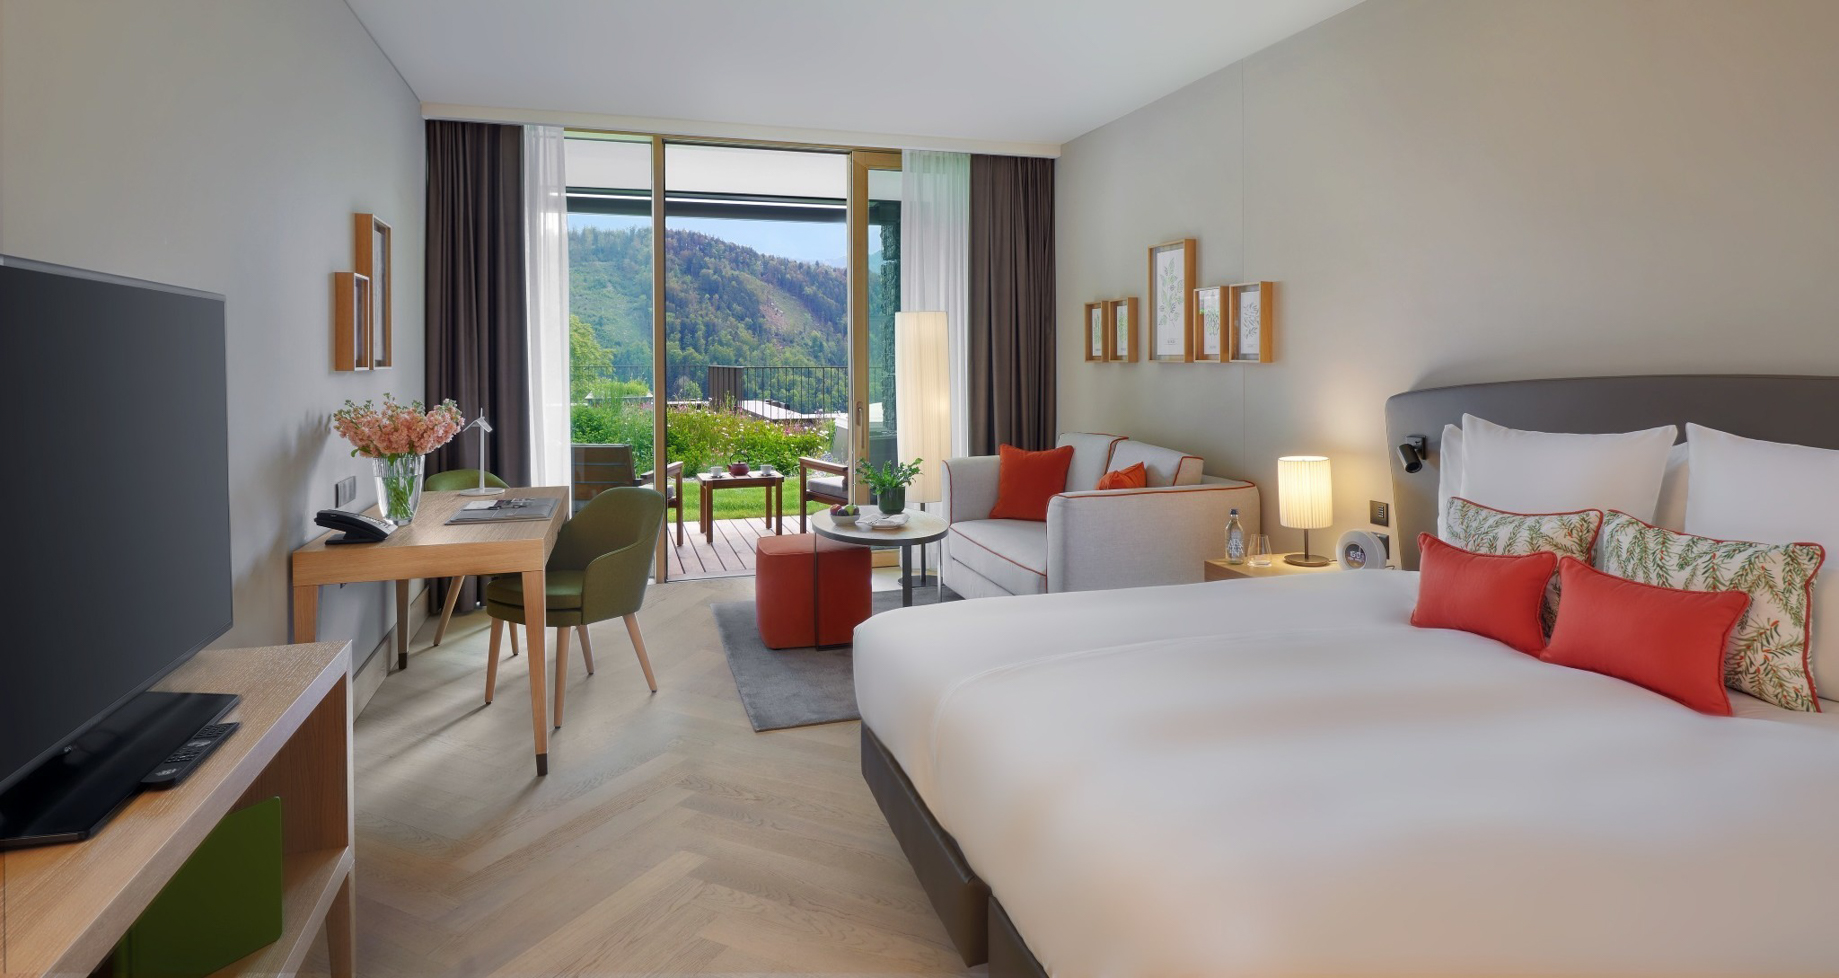 Waldhotel – Burgenstock Hotels & Resort – Obburgen, Switzerland – Executive Room Bedroom